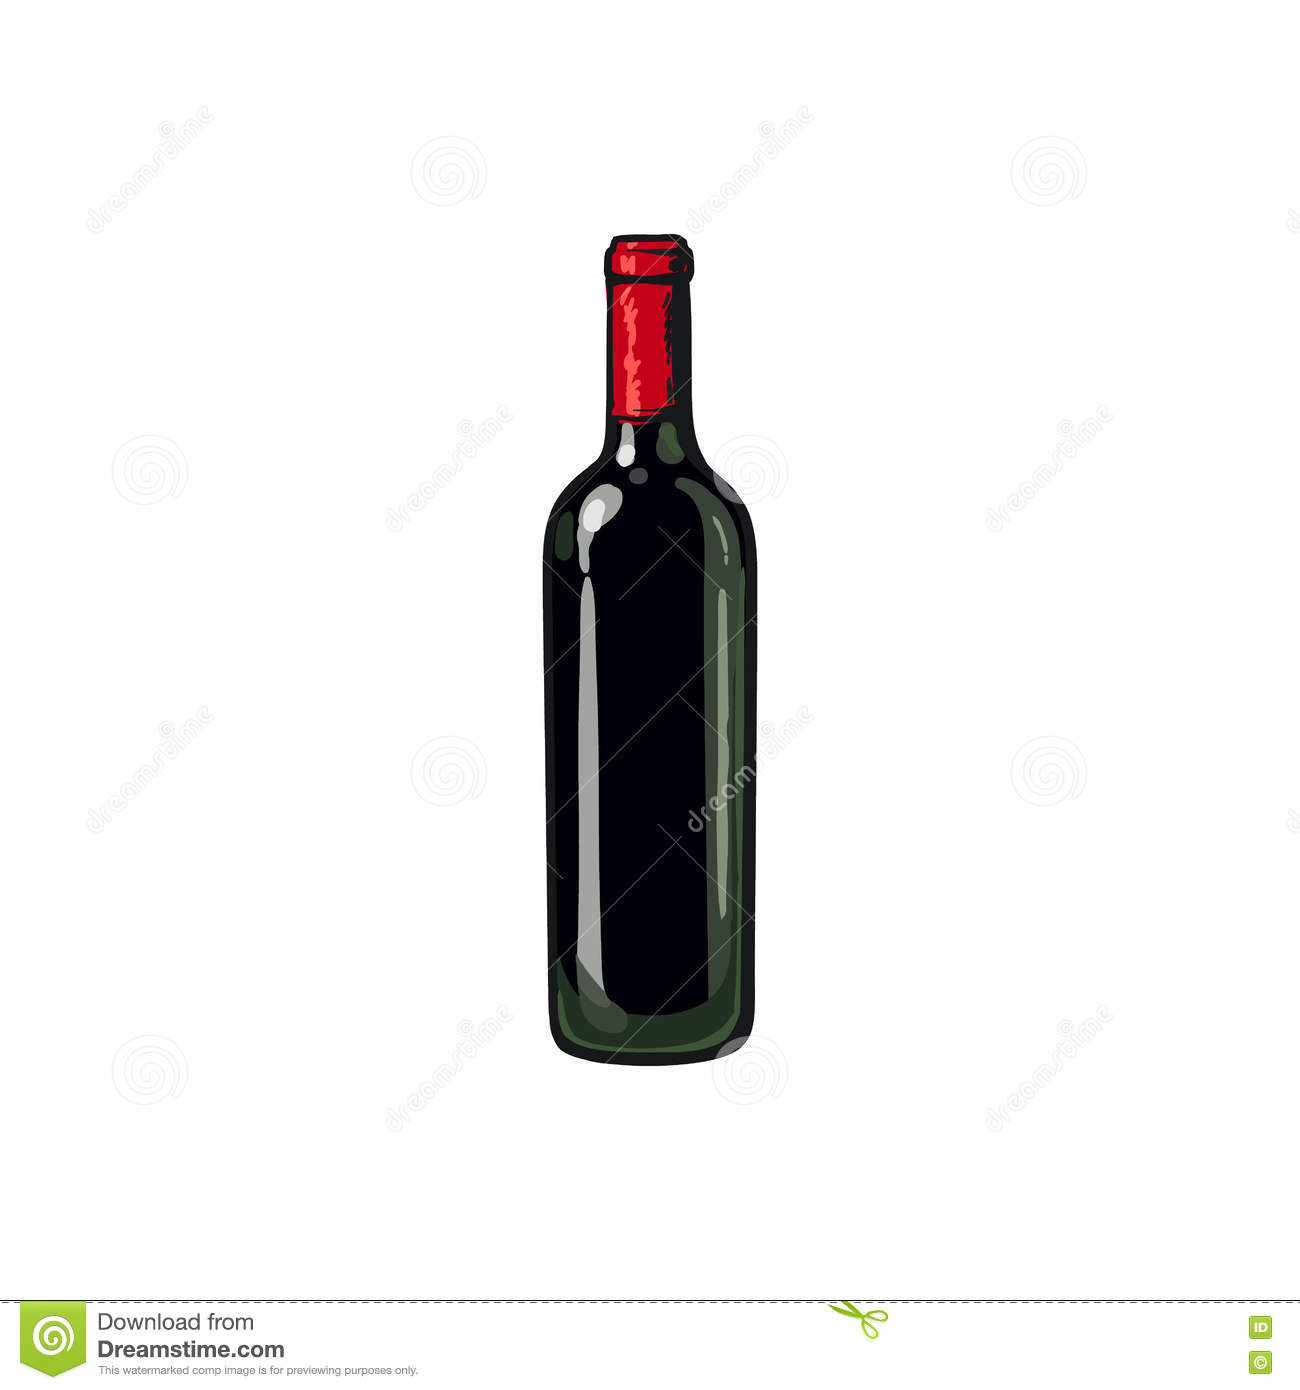 Bouteille De Vin Rouge, Illustration D'Isolement De dedans Coloriage Dessin Bouteille De Vin